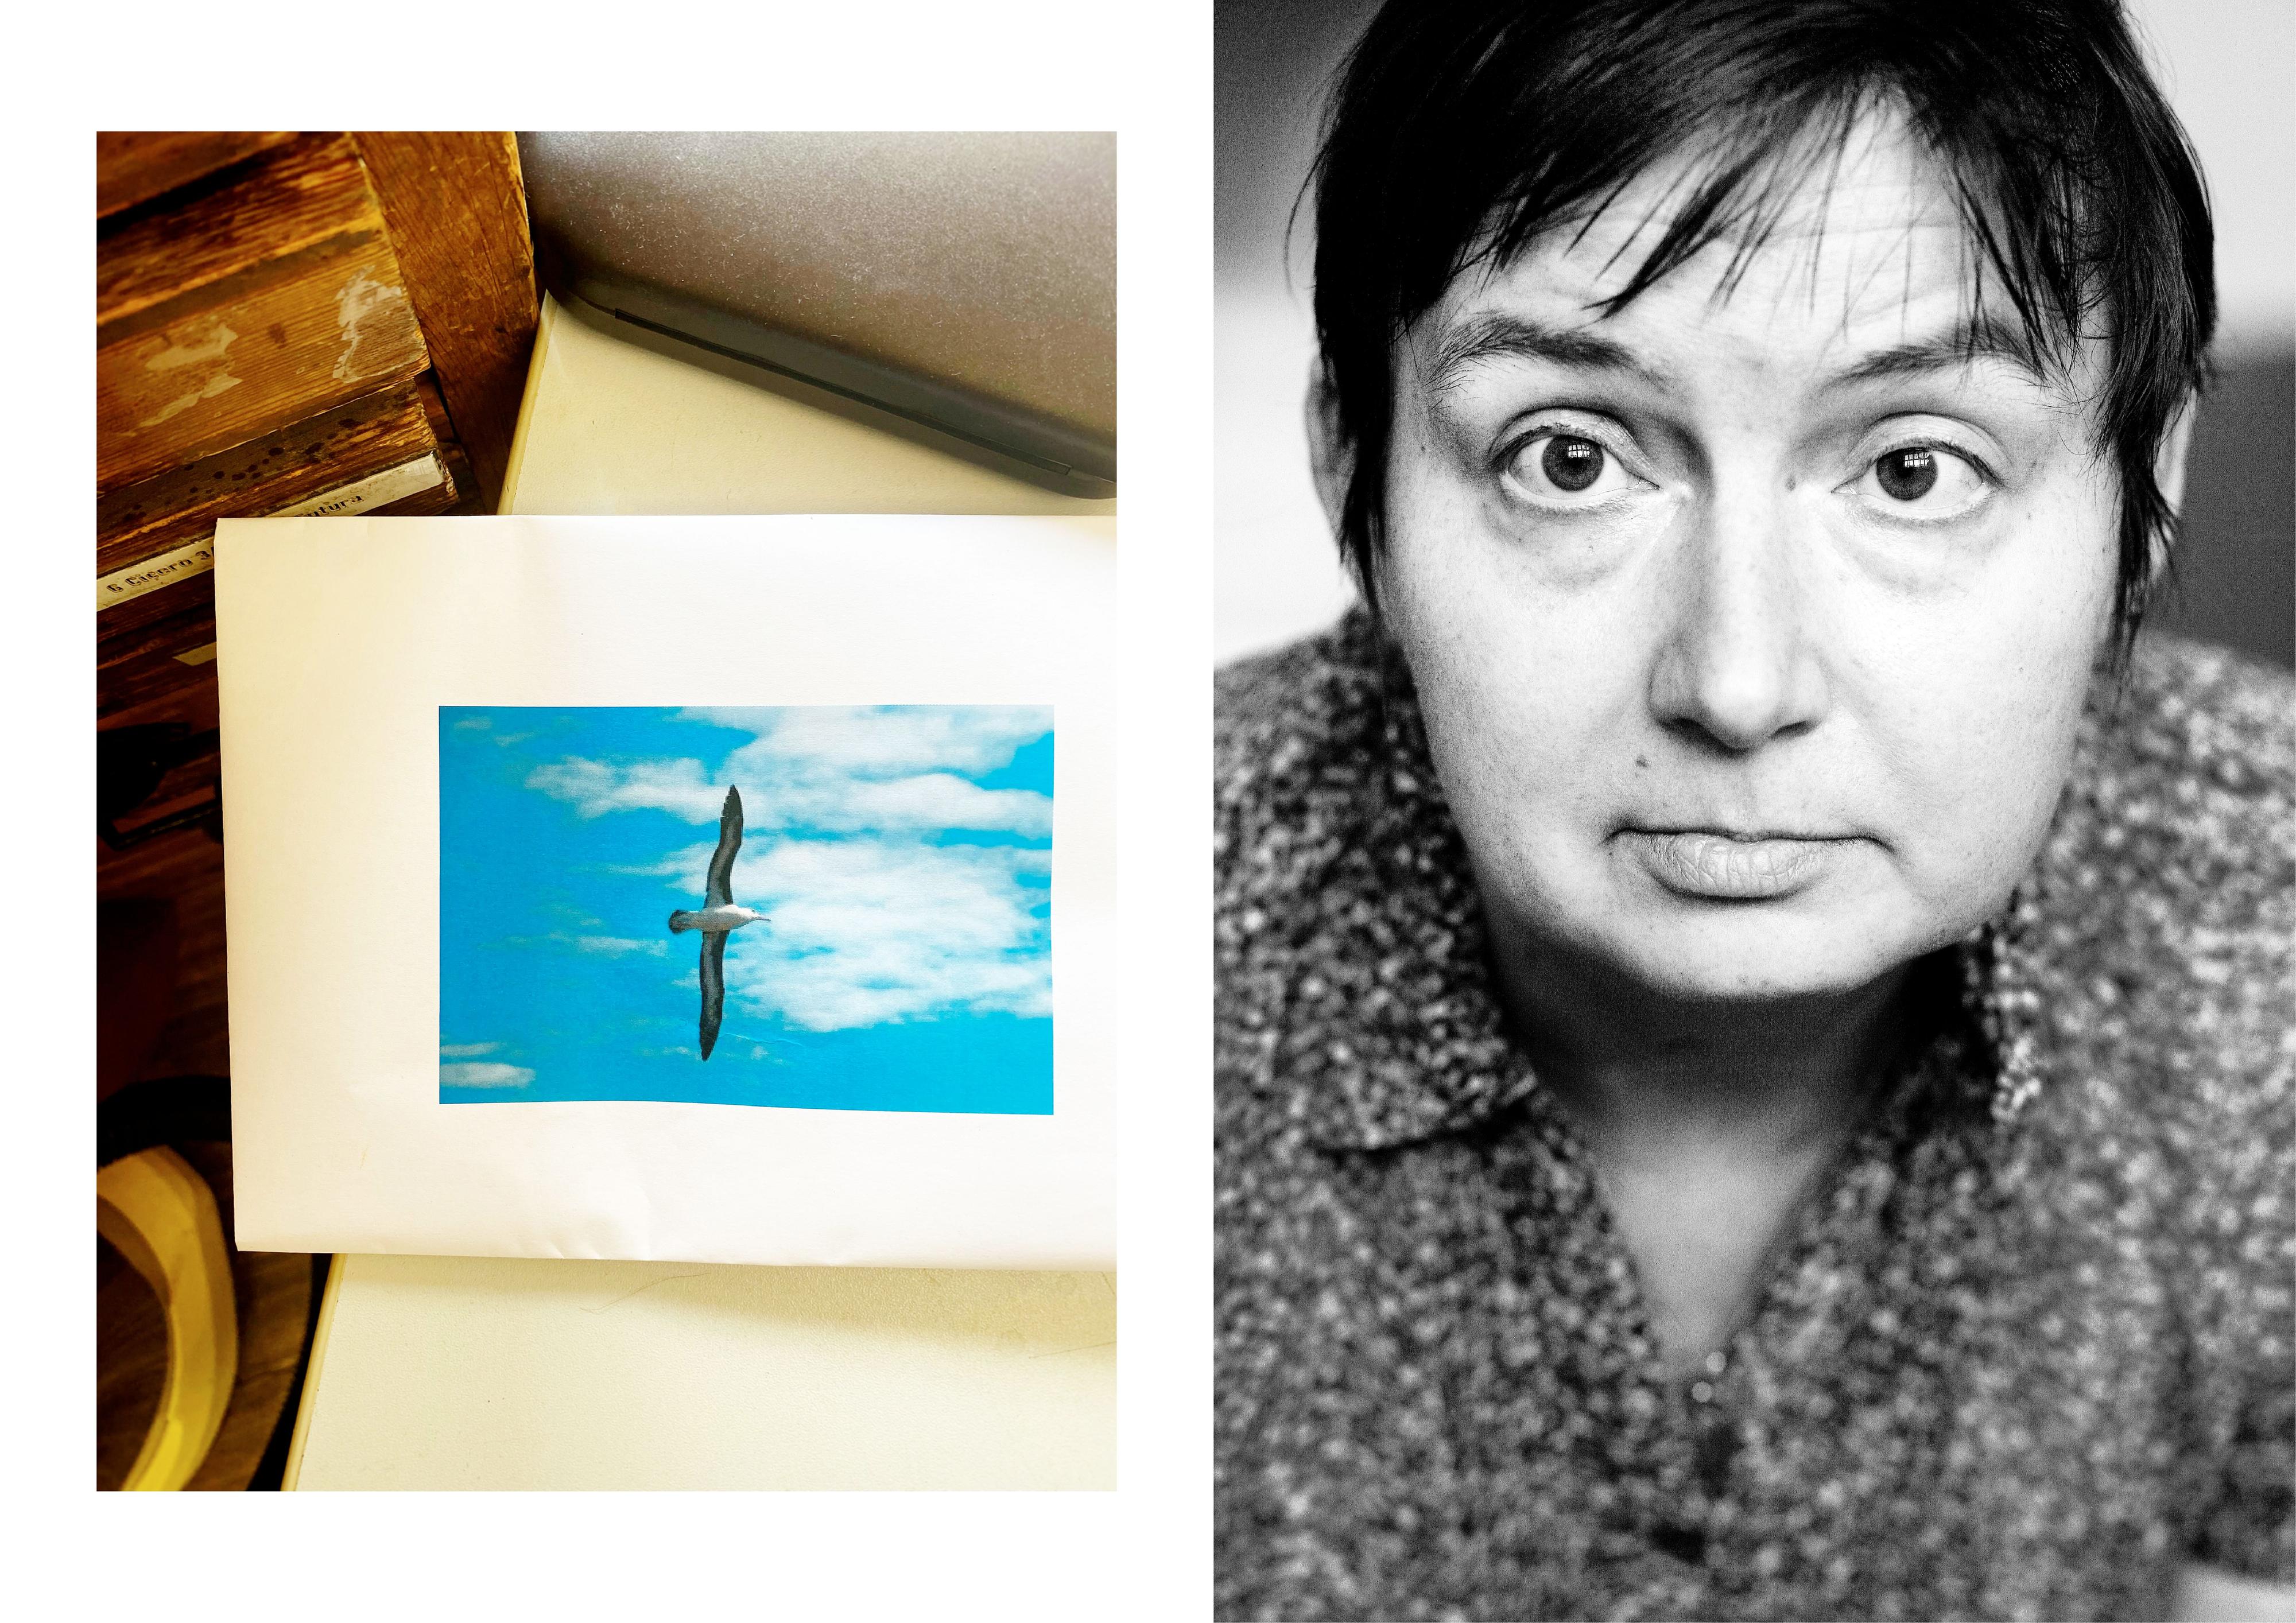 Collage aus zwei Bildern: Links: Auf dem Tisch liegt eine Bild mit einer fliegenden Möwe. Rechts: Porträt einer Frau.